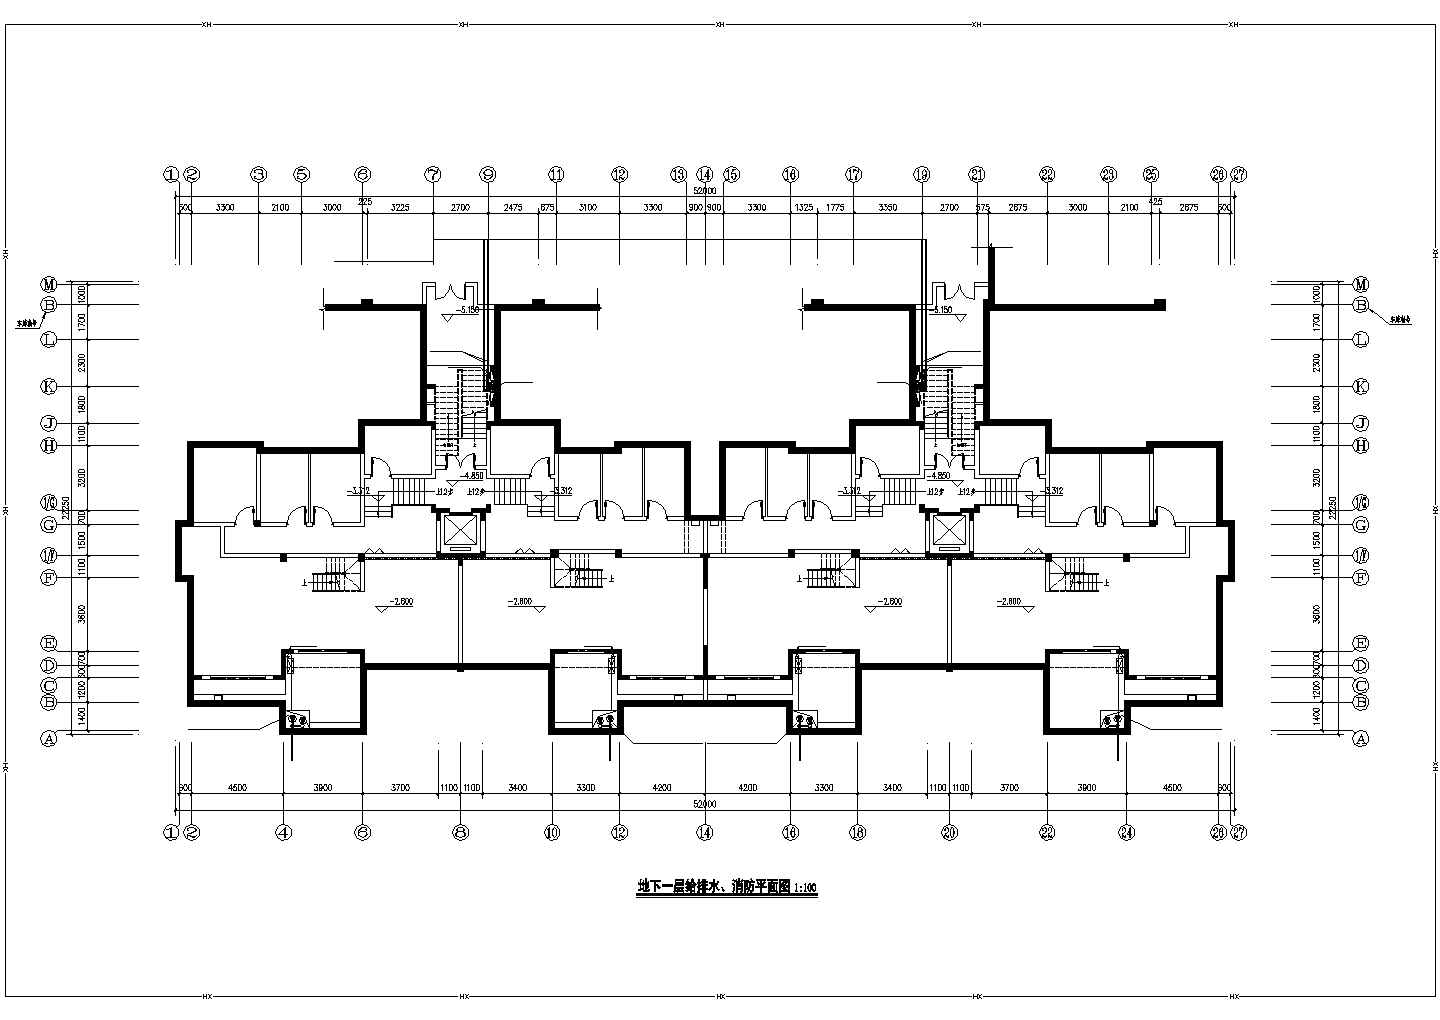 乌鲁木齐市兰香苑小区7层民居住宅楼给排水消防平面设计CAD图纸